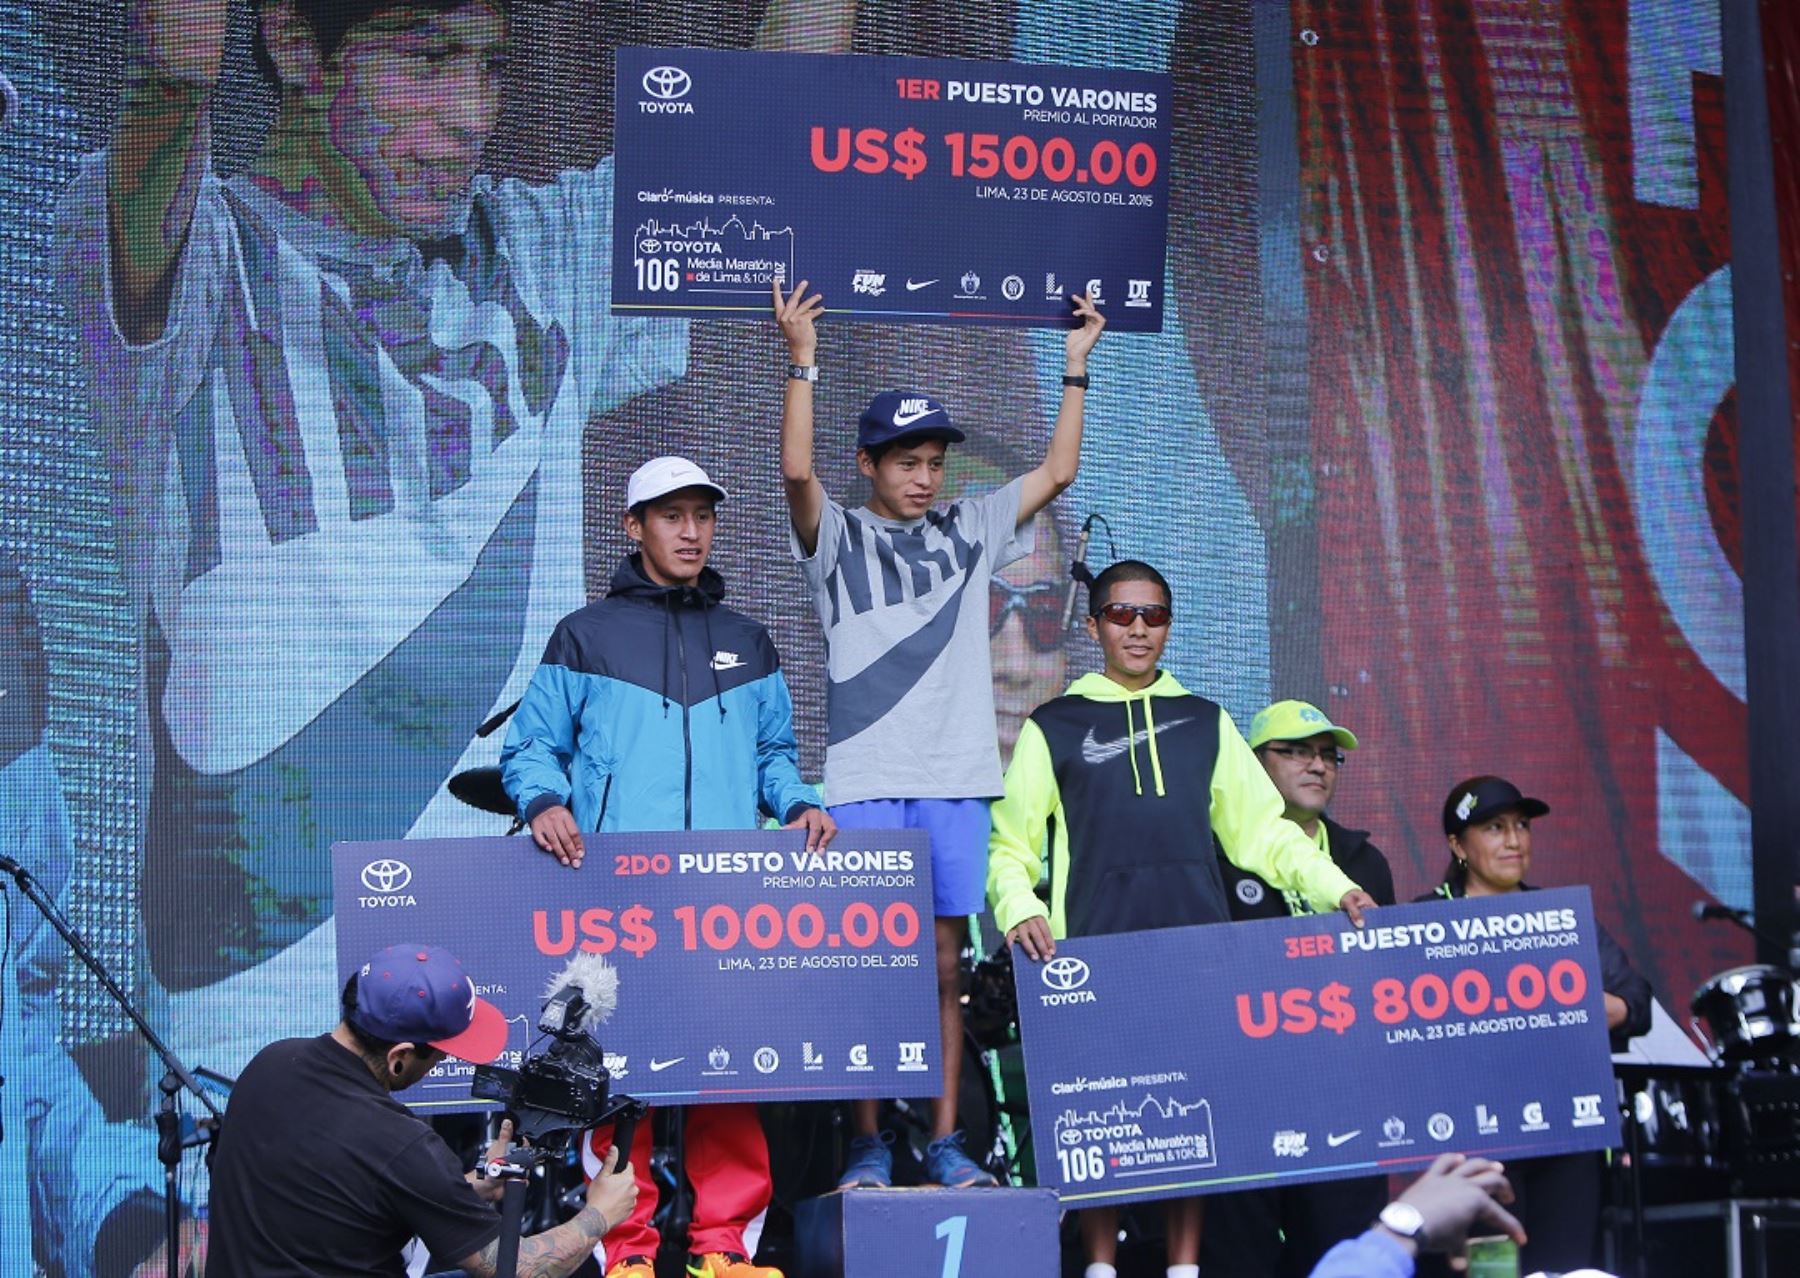 Ganadores de la Media Maratón de Lima 2015.